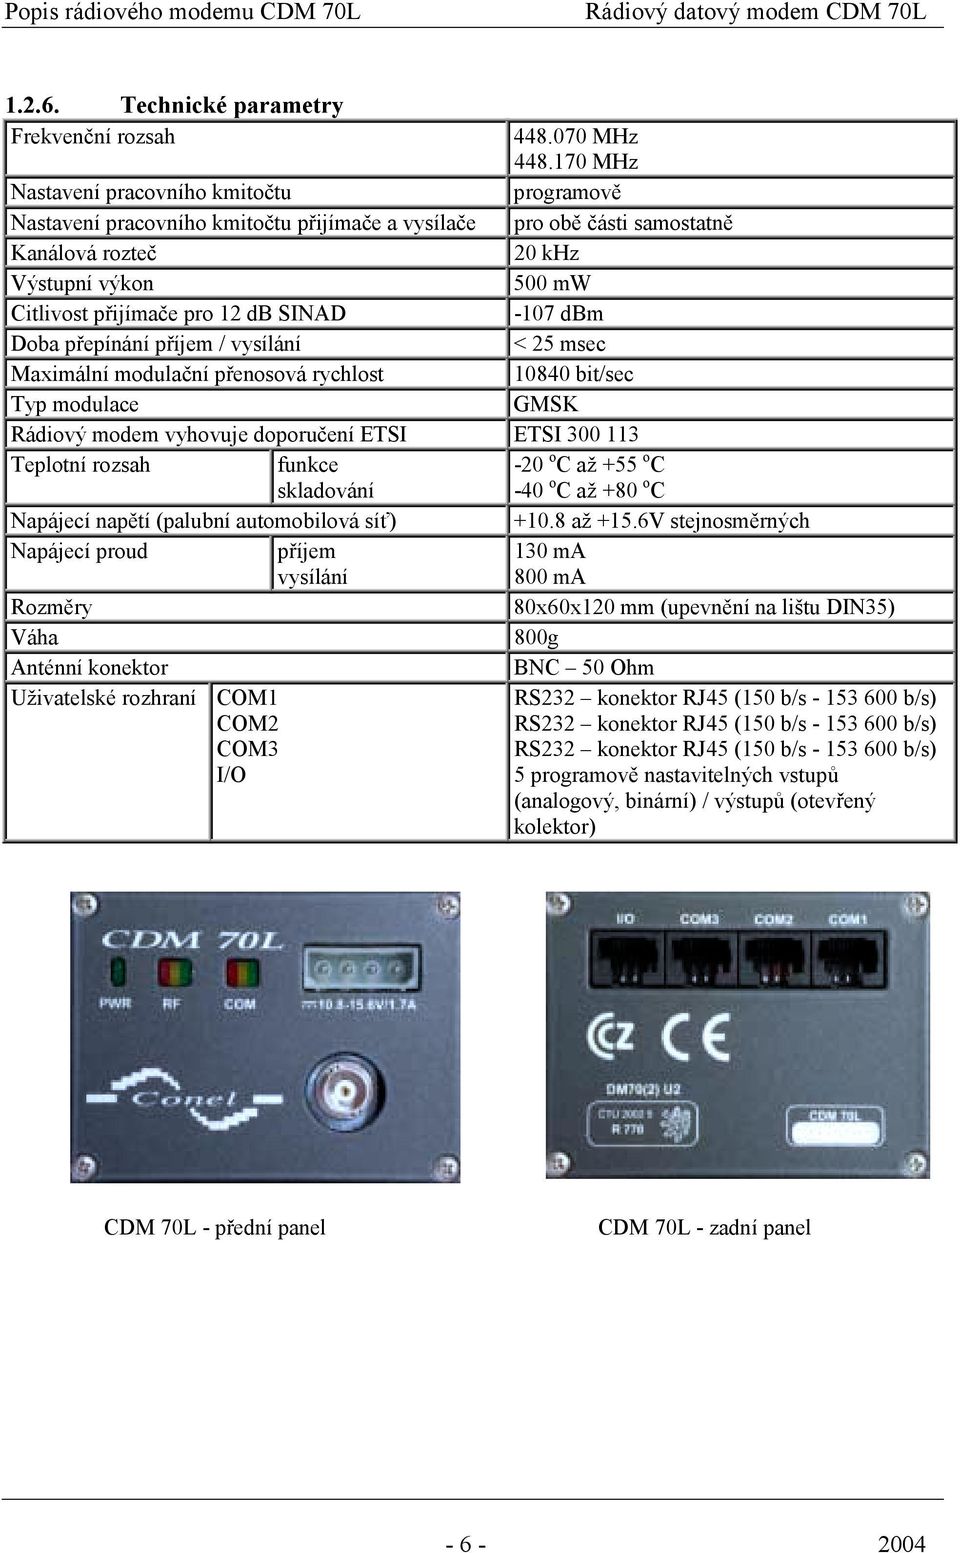 SINAD -107 dbm Doba přepínání příjem / vysílání < 25 msec Maximální modulační přenosová rychlost 10840 bit/sec Typ modulace GMSK Rádiový modem vyhovuje doporučení ETSI ETSI 300 113 Teplotní rozsah